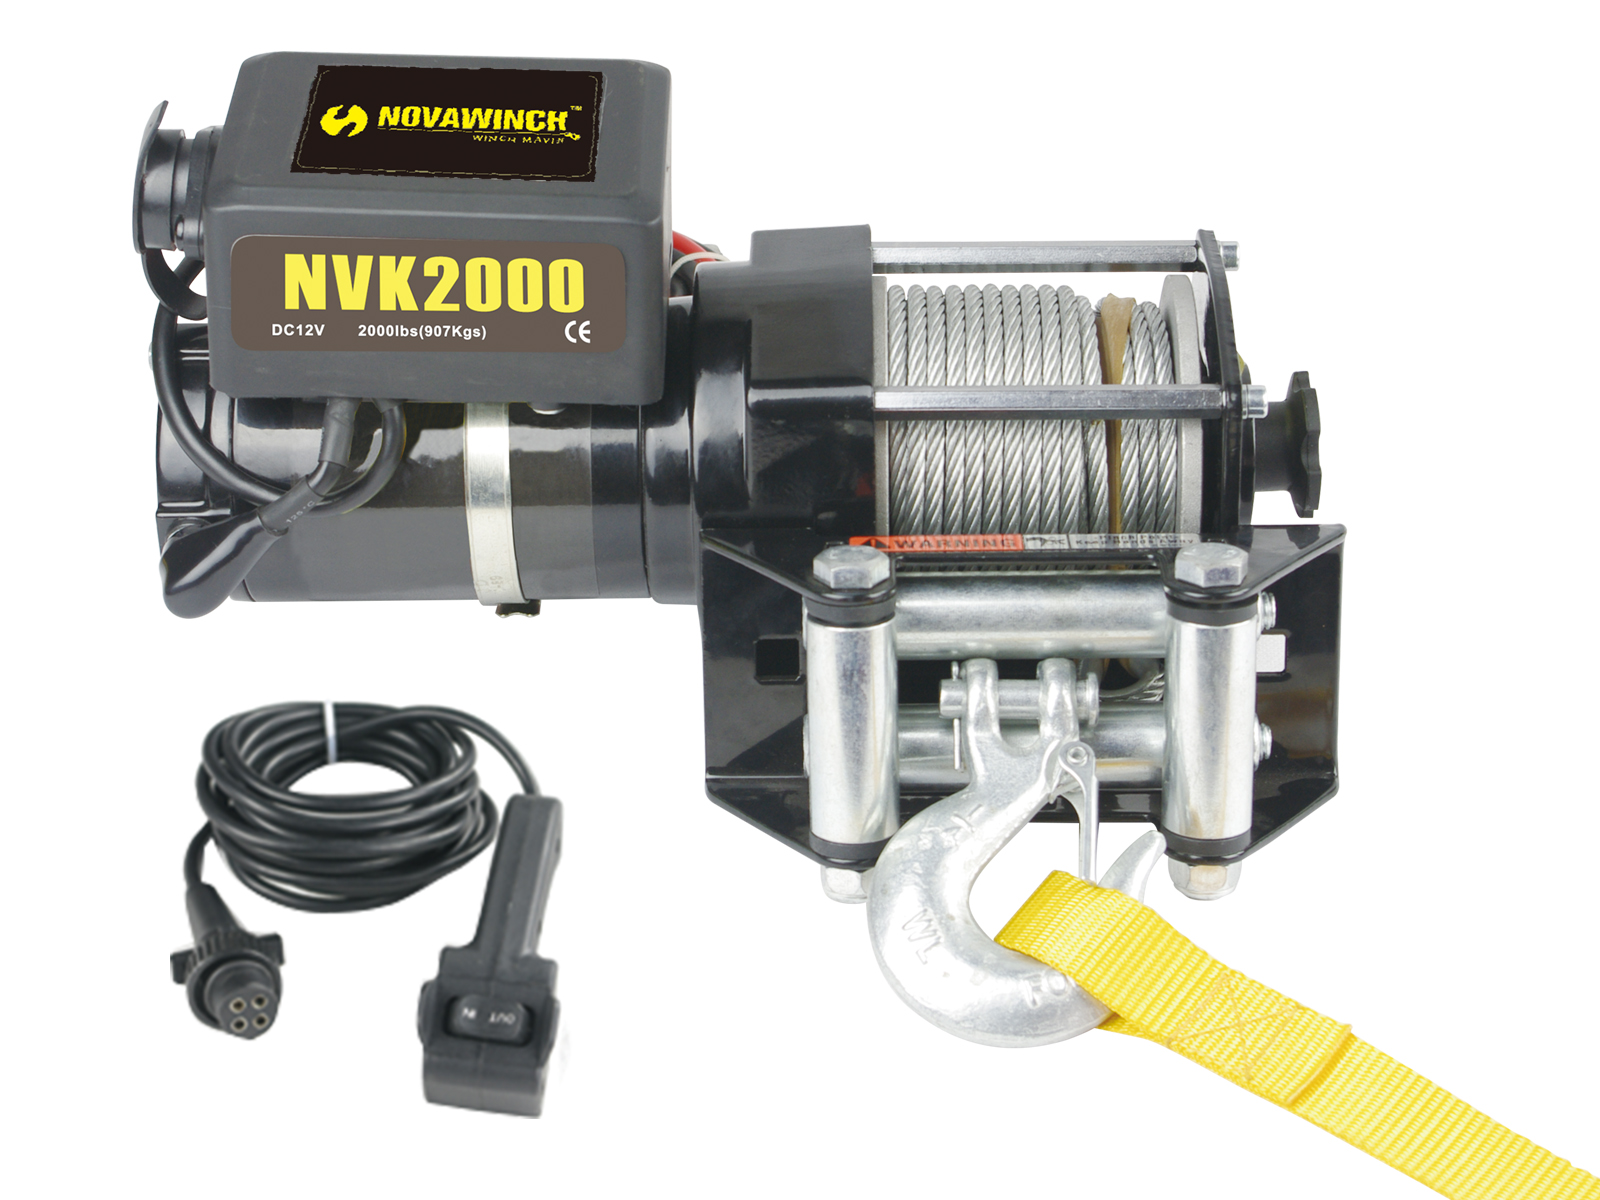 Novawinch NVK 2000i-12V-908 kg